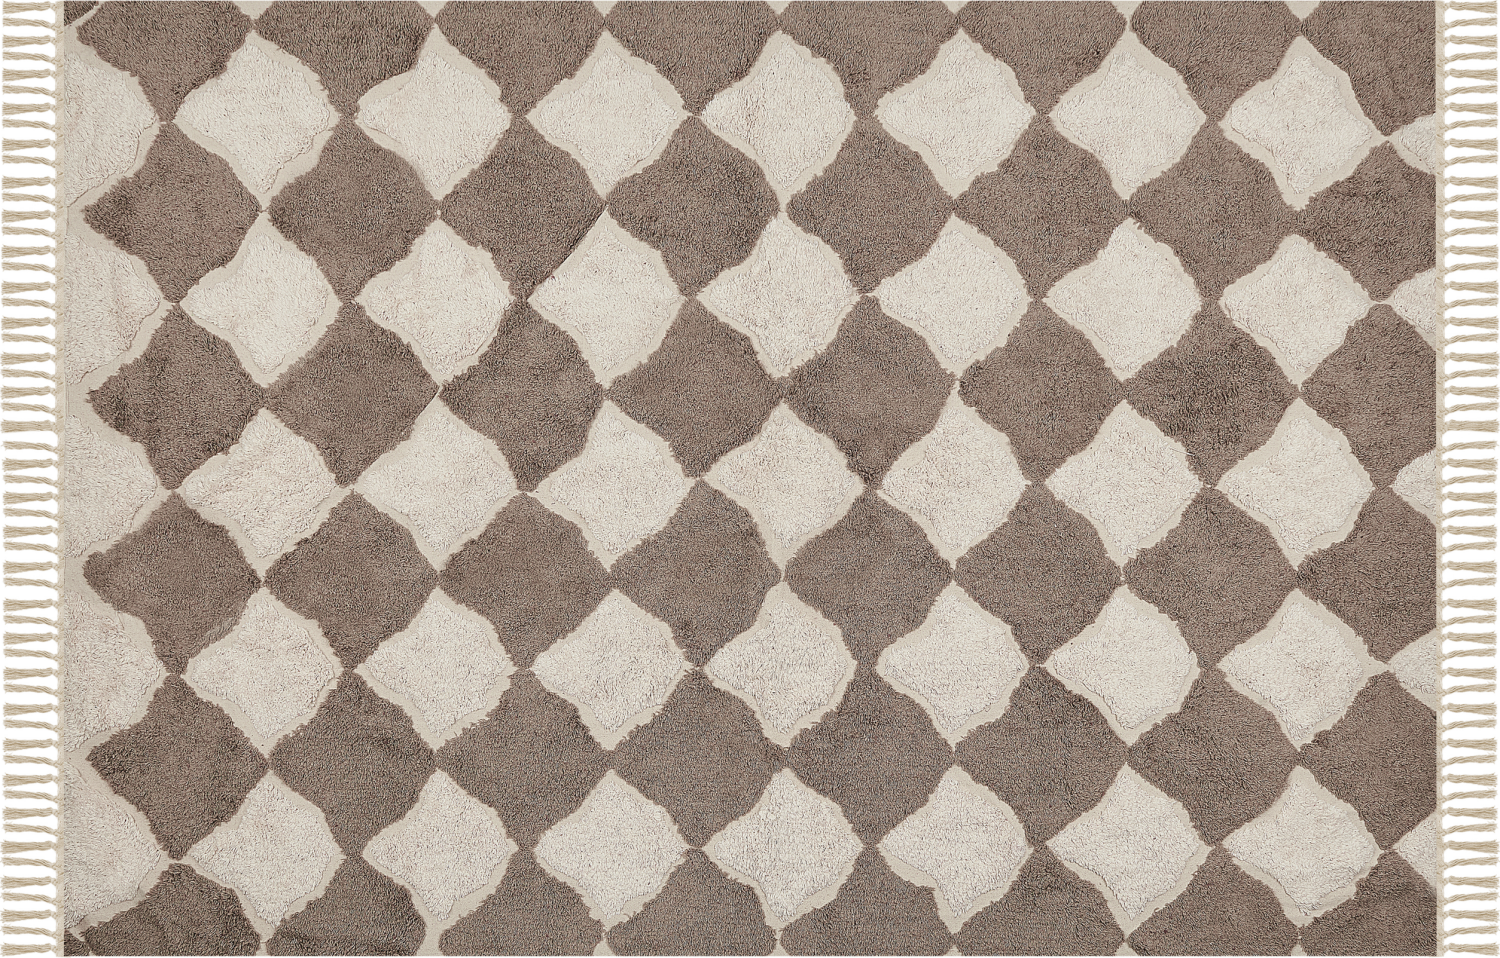 Teppich Baumwolle braun beige 160 x 230 cm SINOP Bild 1